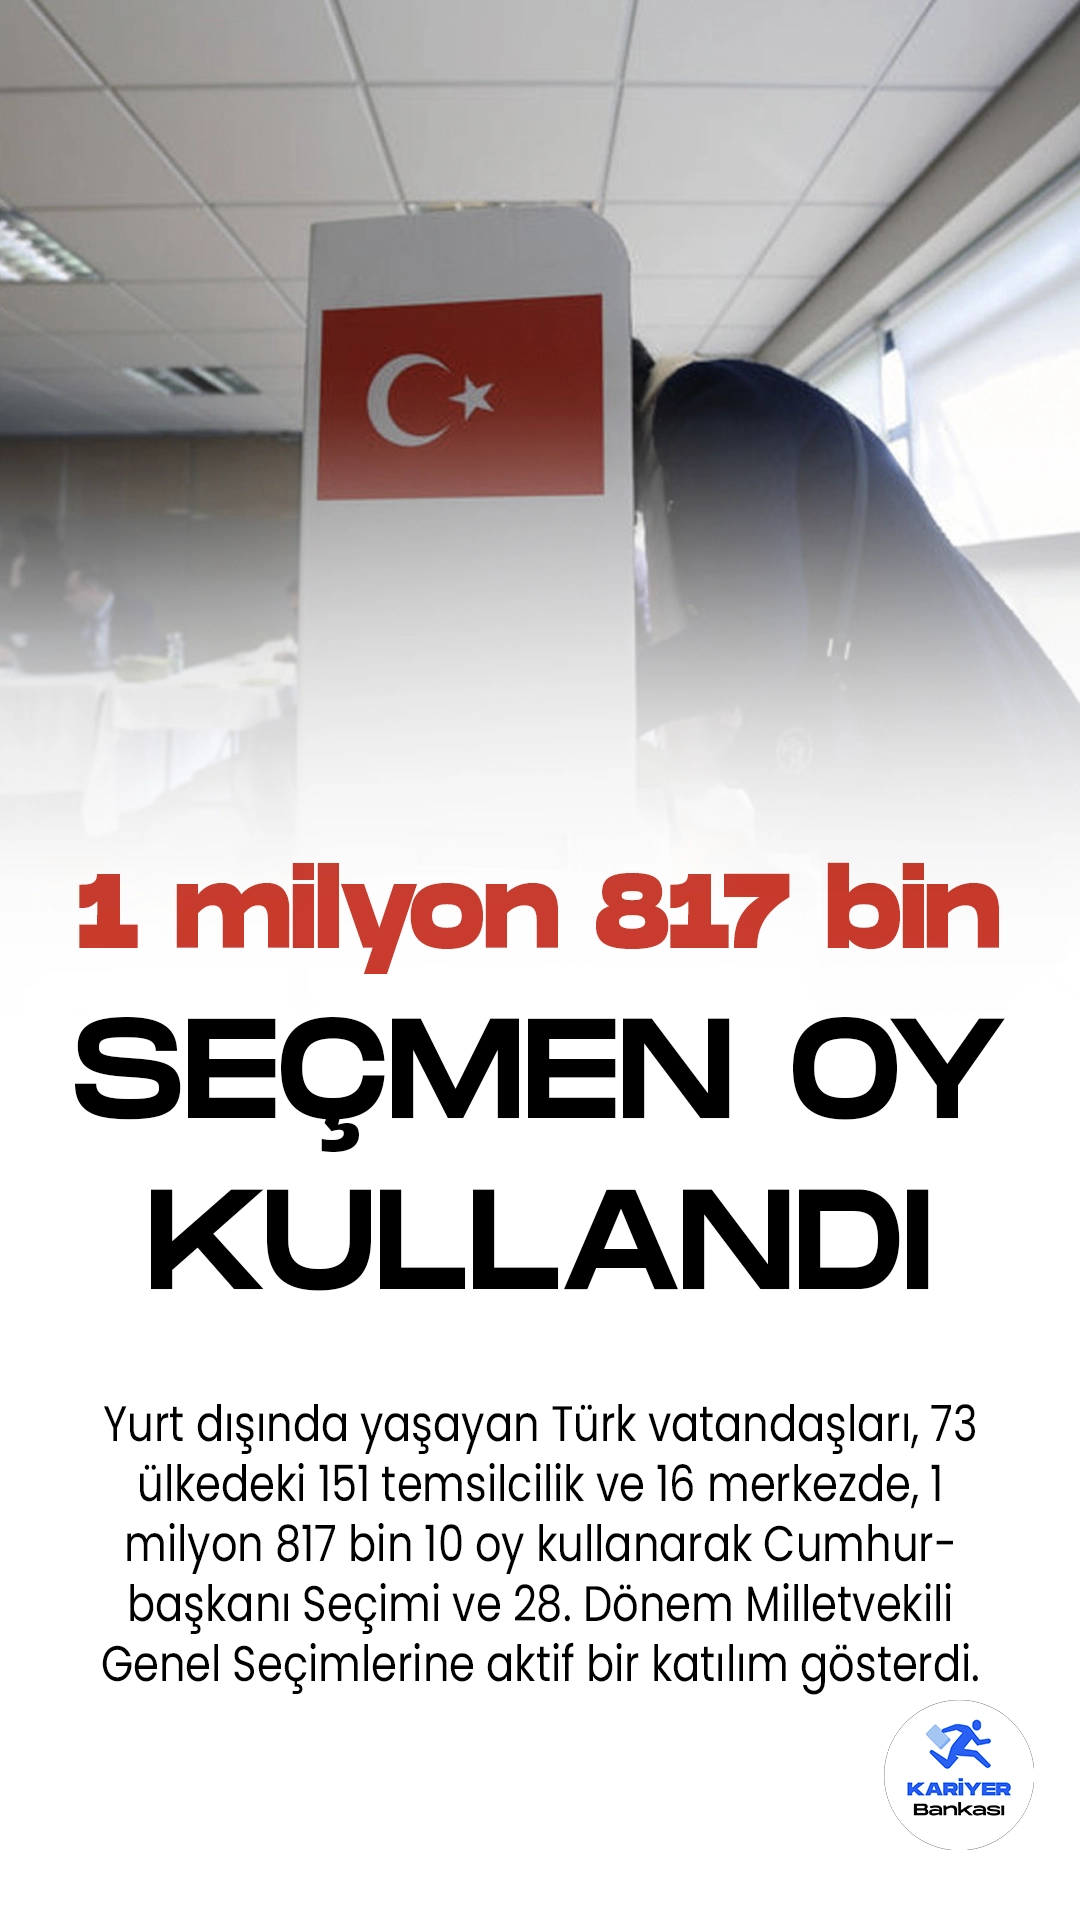 Yurt dışında yaşayan Türk vatandaşları, 73 ülkedeki 151 temsilcilik ve 16 merkezde, 1 milyon 817 bin 10 oy kullanarak Cumhurbaşkanı Seçimi ve 28. Dönem Milletvekili Genel Seçimlerine aktif bir katılım gösterdi.